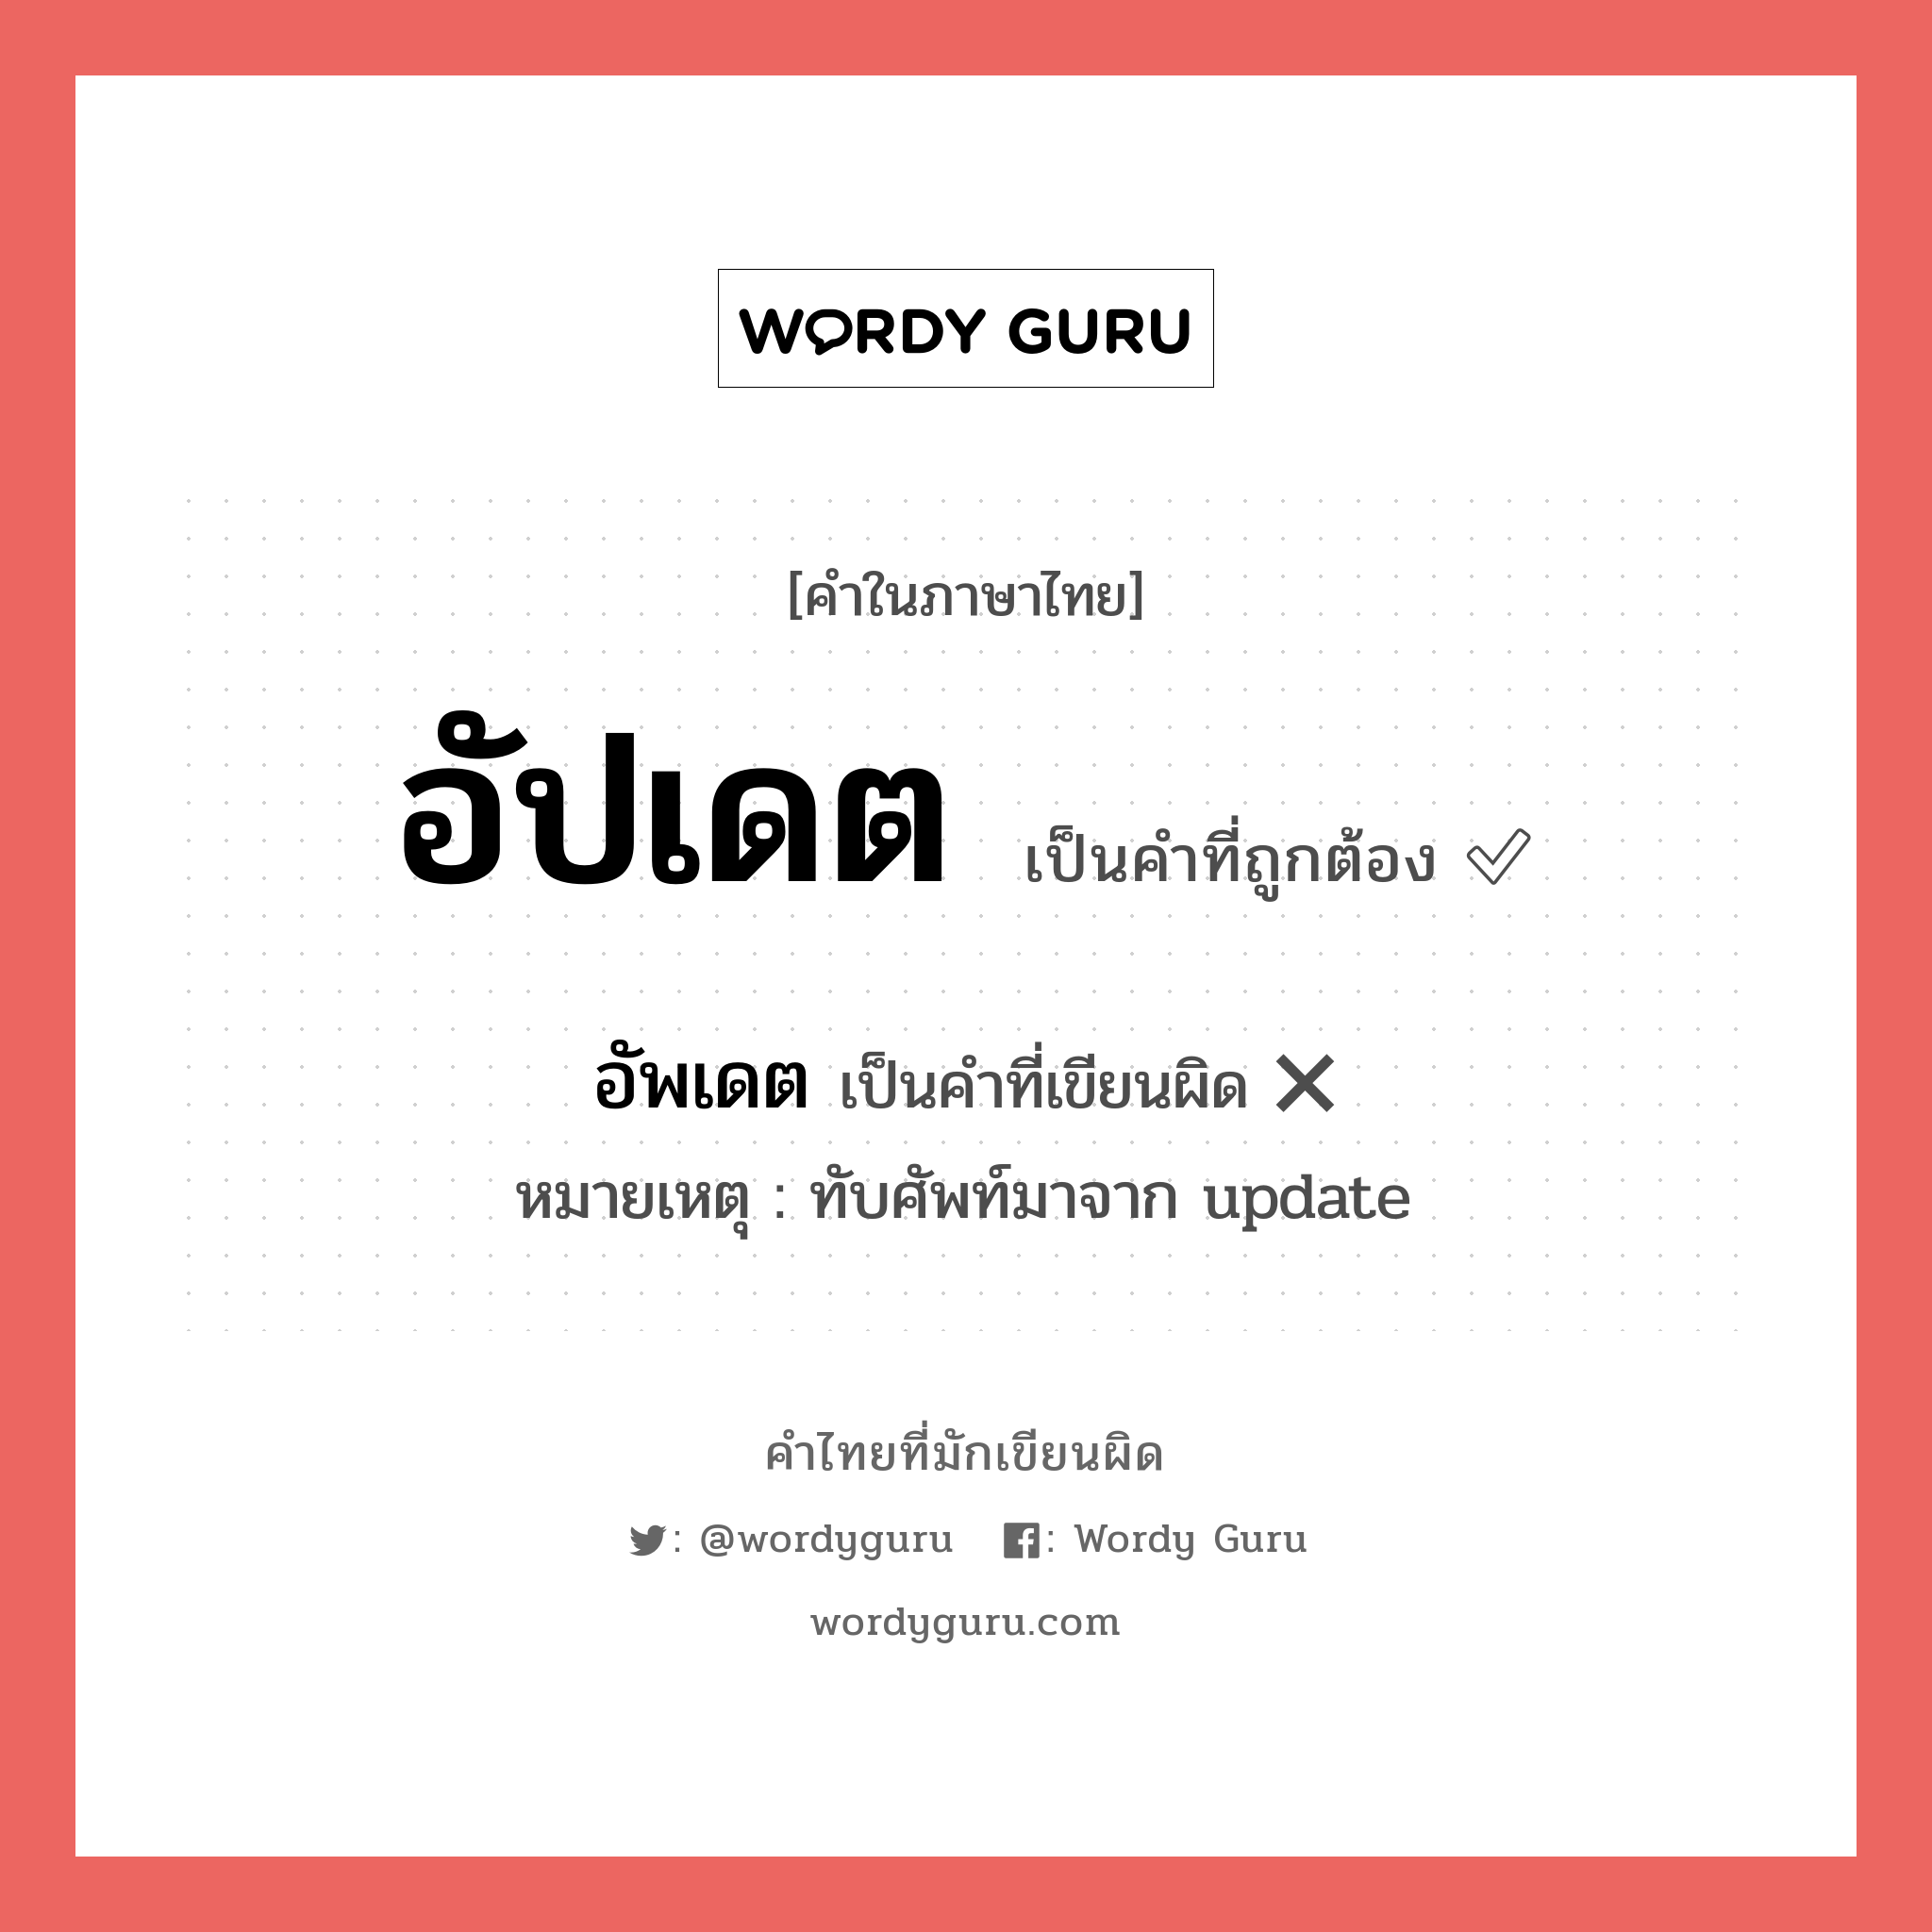 อัปเดต หรือ อัพเดท เขียนยังไง? คำไหนเขียนถูก?, คำในภาษาไทยที่มักเขียนผิด อัปเดต คำที่ผิด ❌ อัพเดต หมายเหตุ ทับศัพท์มาจาก update